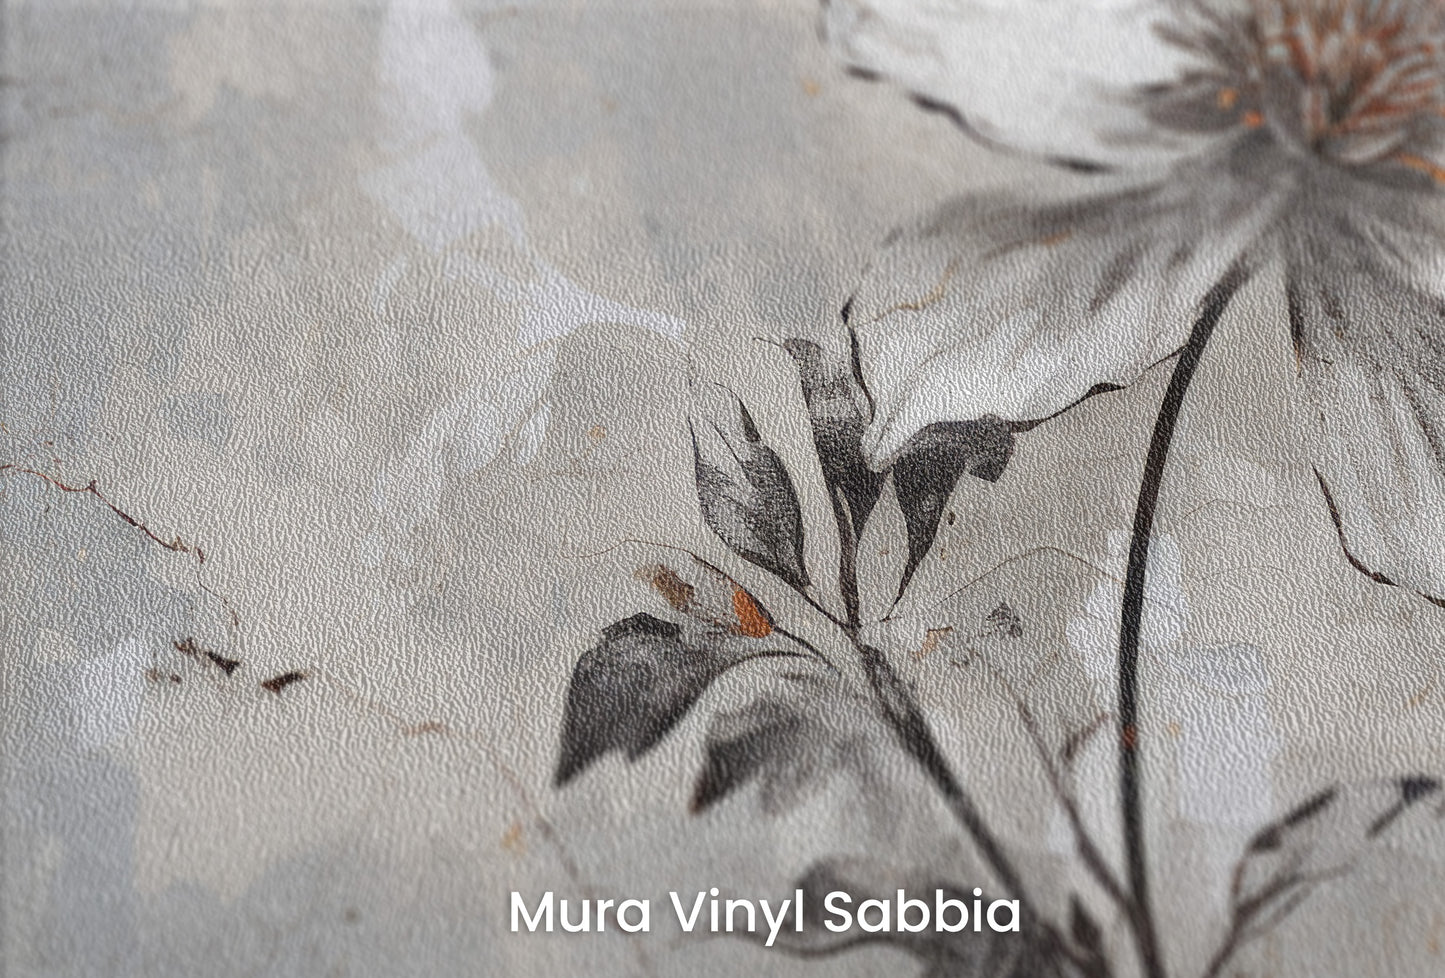 Zbliżenie na artystyczną fototapetę o nazwie INDUSTRIAL FLOWER ELEGANCE na podłożu Mura Vinyl Sabbia struktura grubego ziarna piasku.